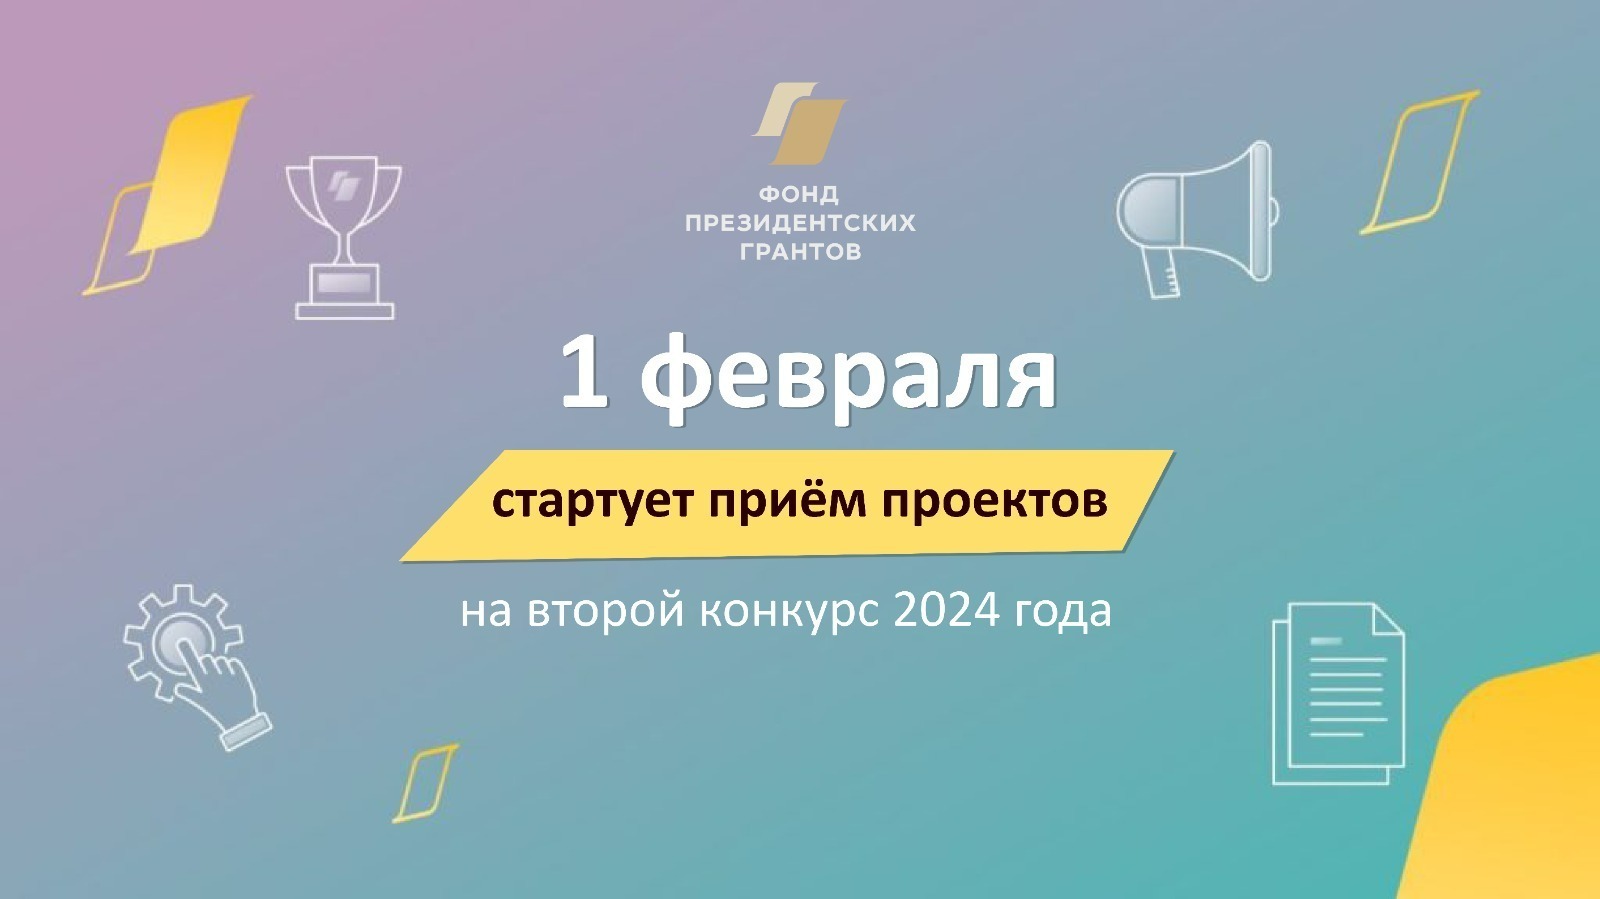 В Башкирии начинается приём заявок на конкурс Фонда президентских грантов